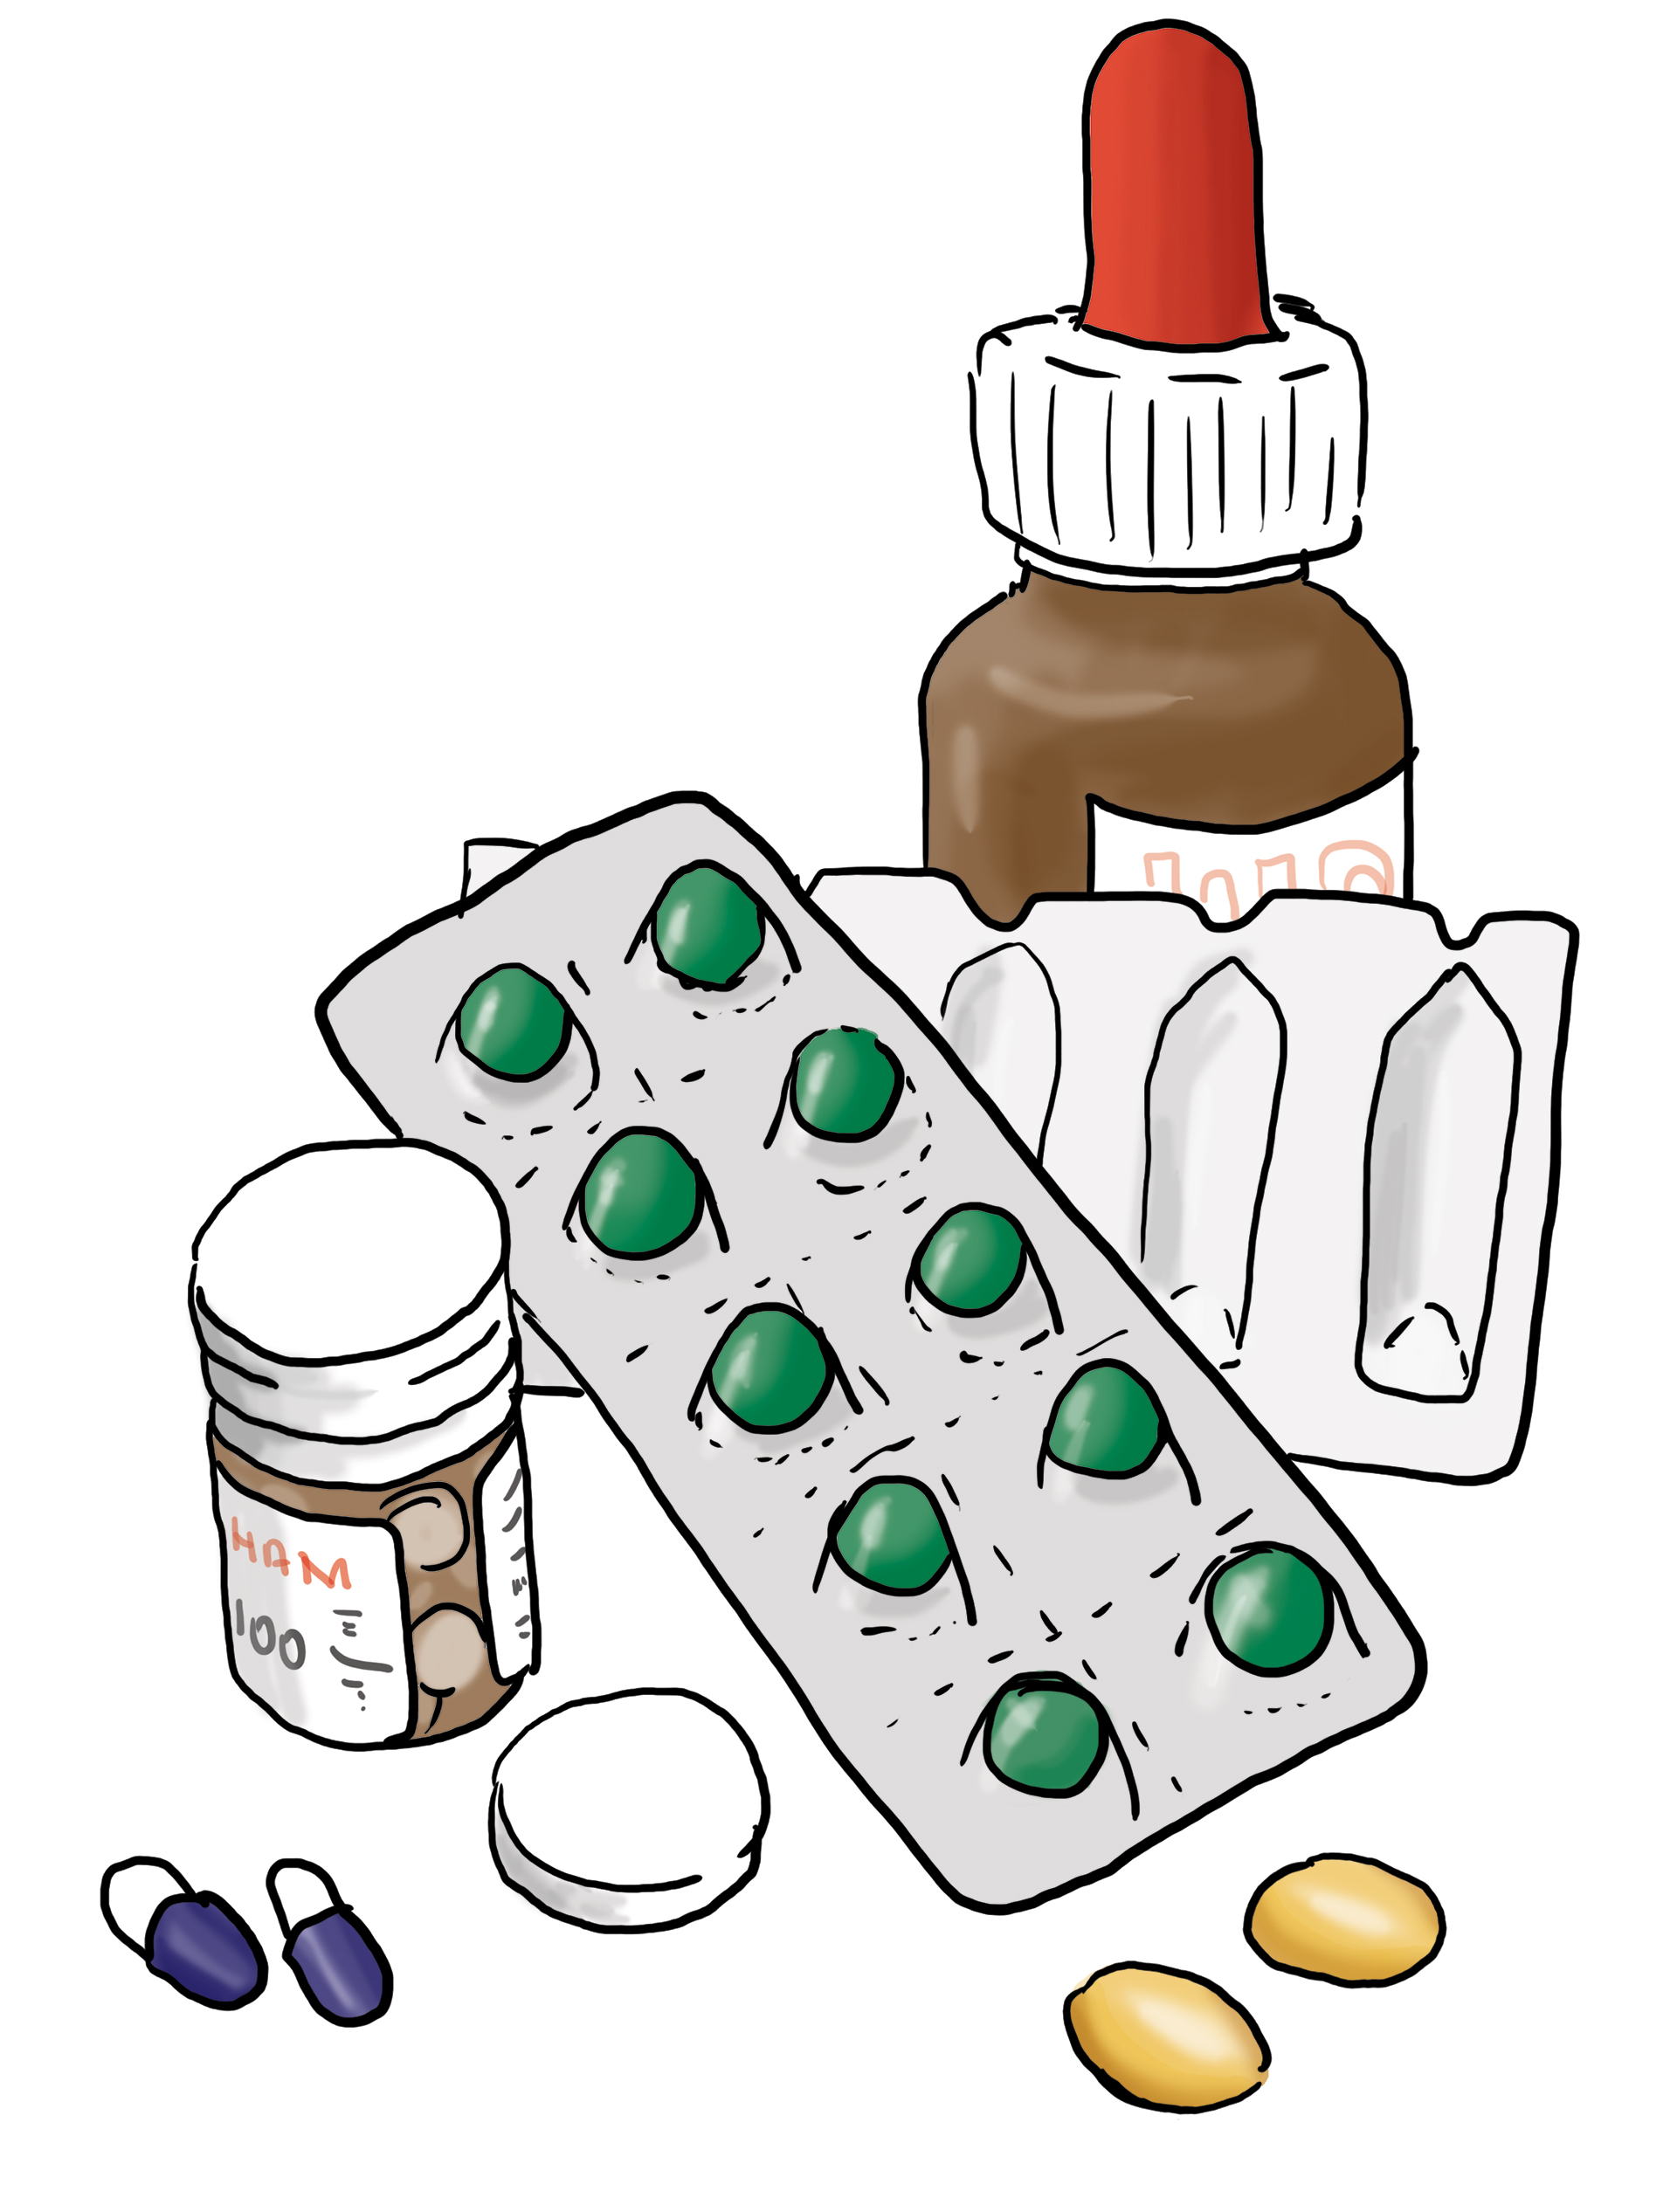 Tabletten und andere Medikamente